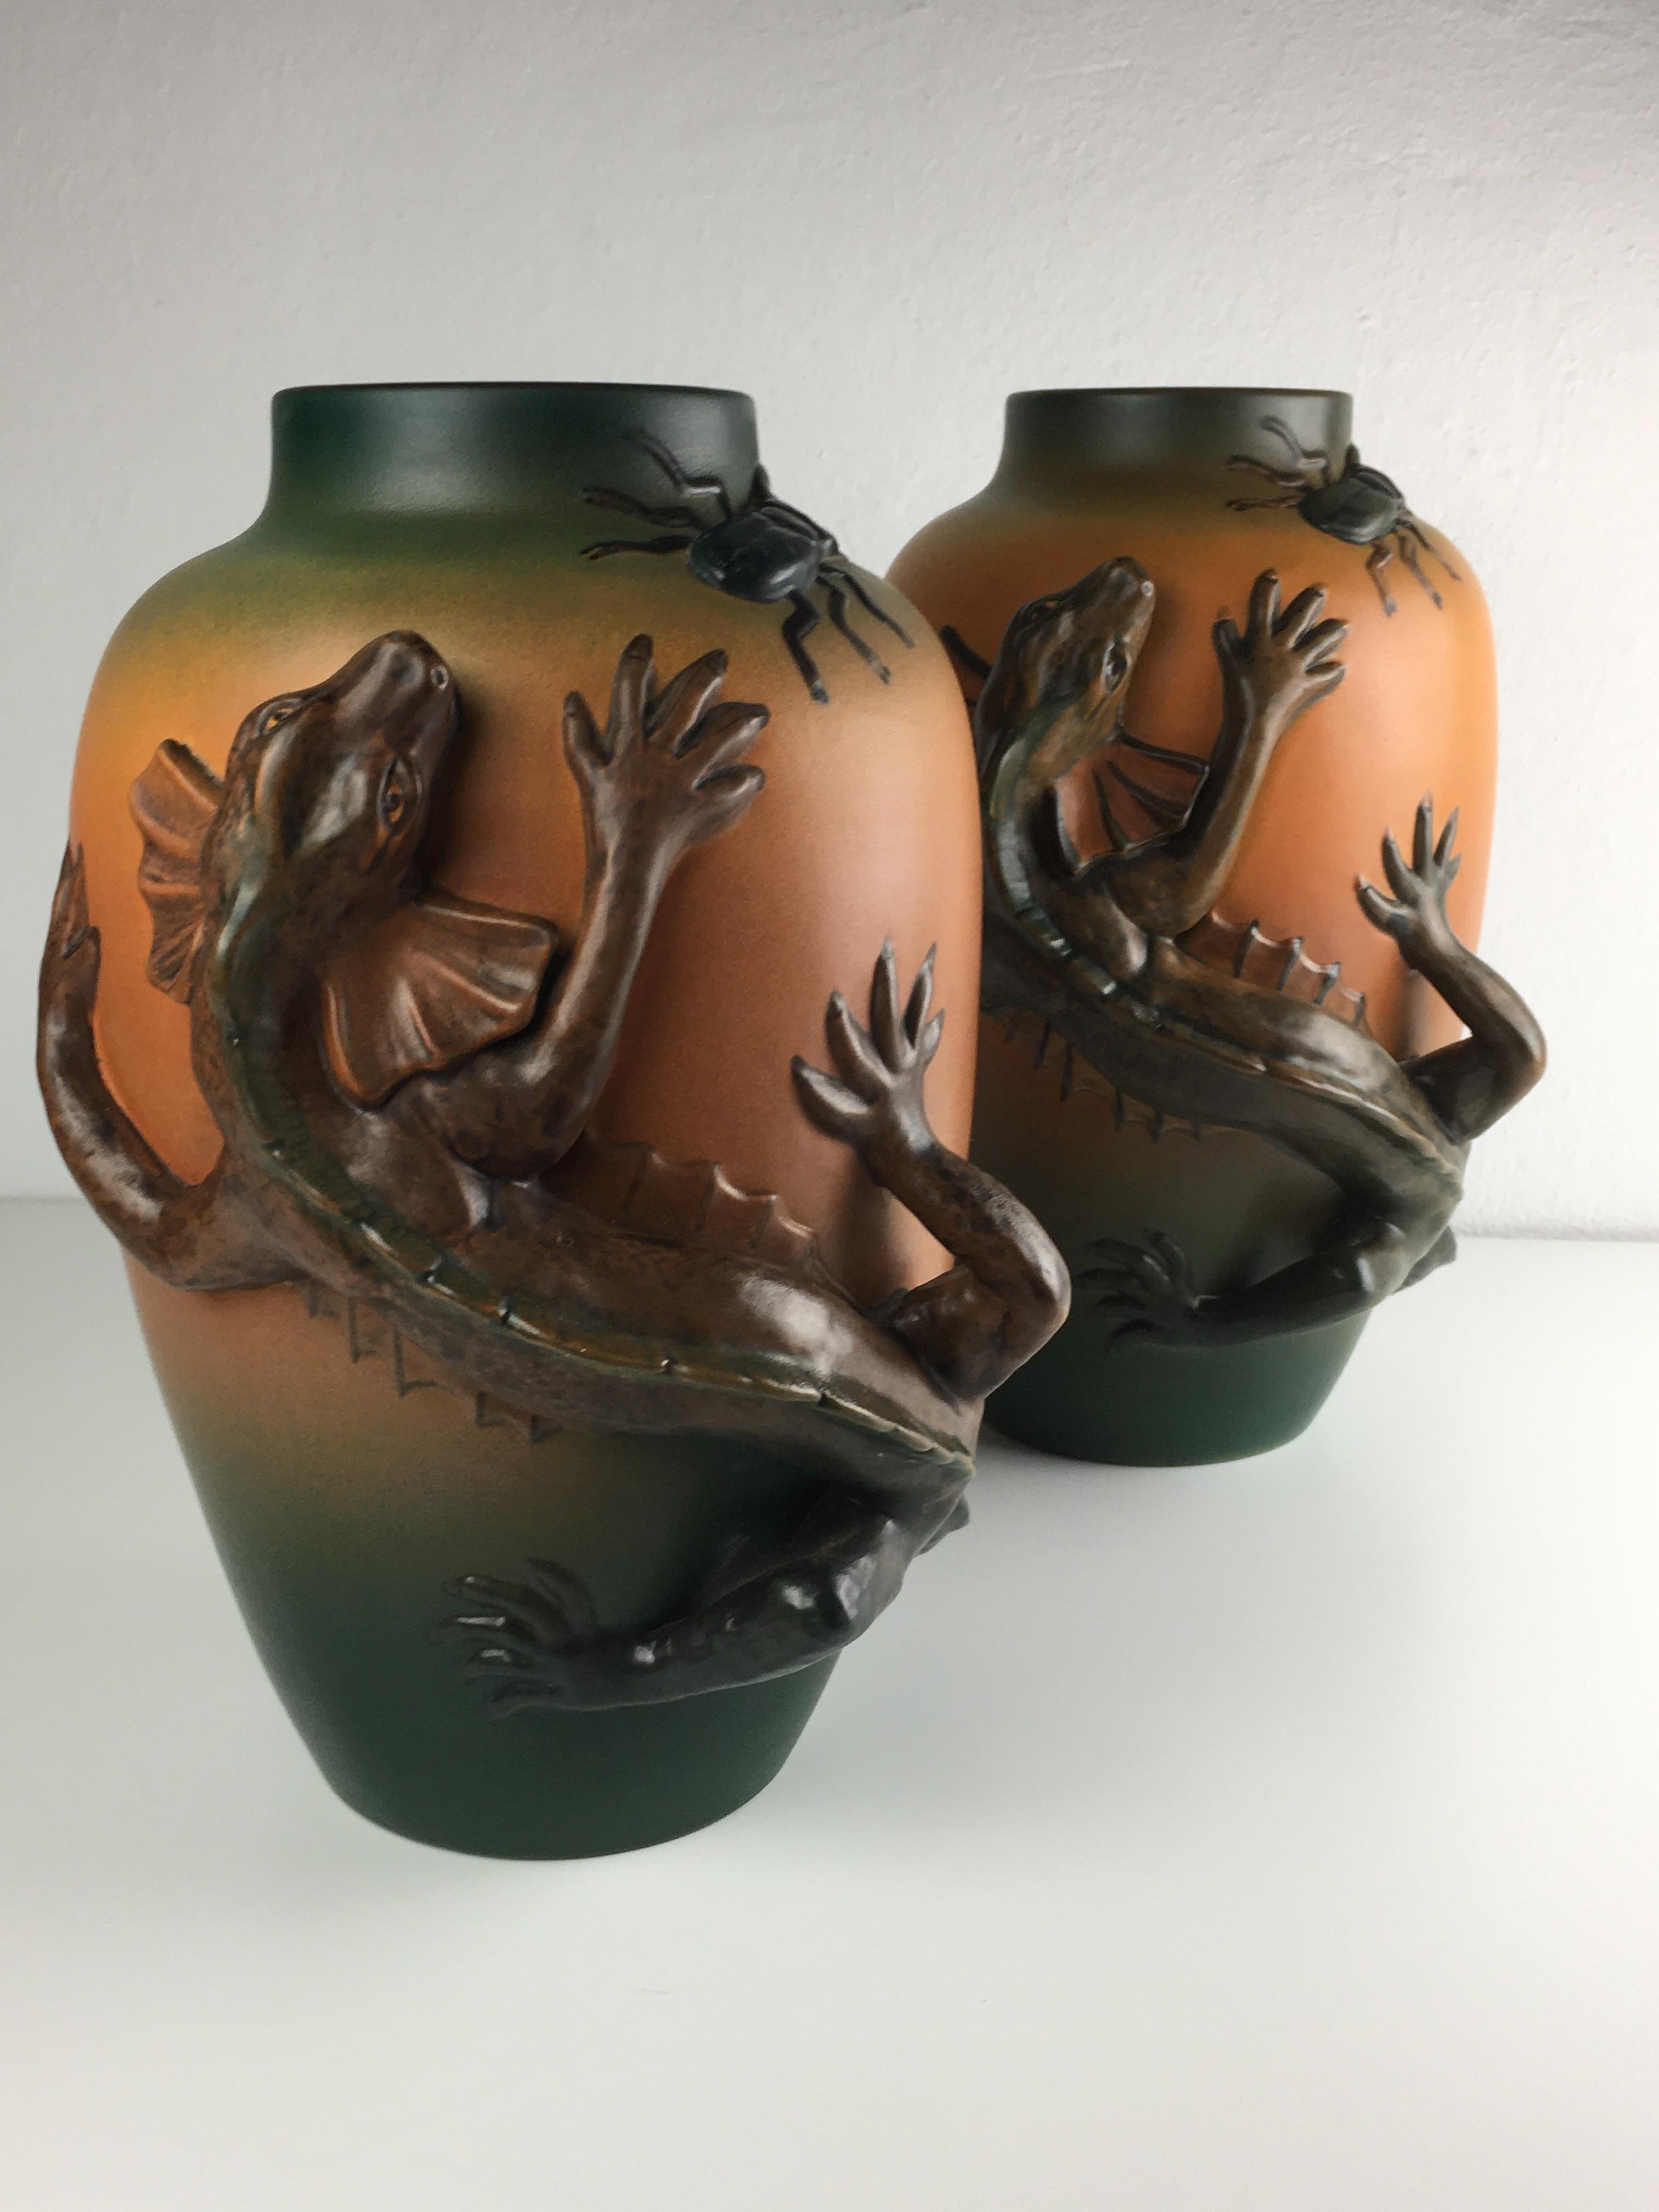 Rare ensemble de deux vases lézards Art Nouveau danois par Lauritz Jensen pour Ipsen Enke en 1899.

Les vases art nuveau présentent un lézard vivant très bien réalisé sur la face avant des vases, chassant un scarabée rampant sur le côté des vases ;